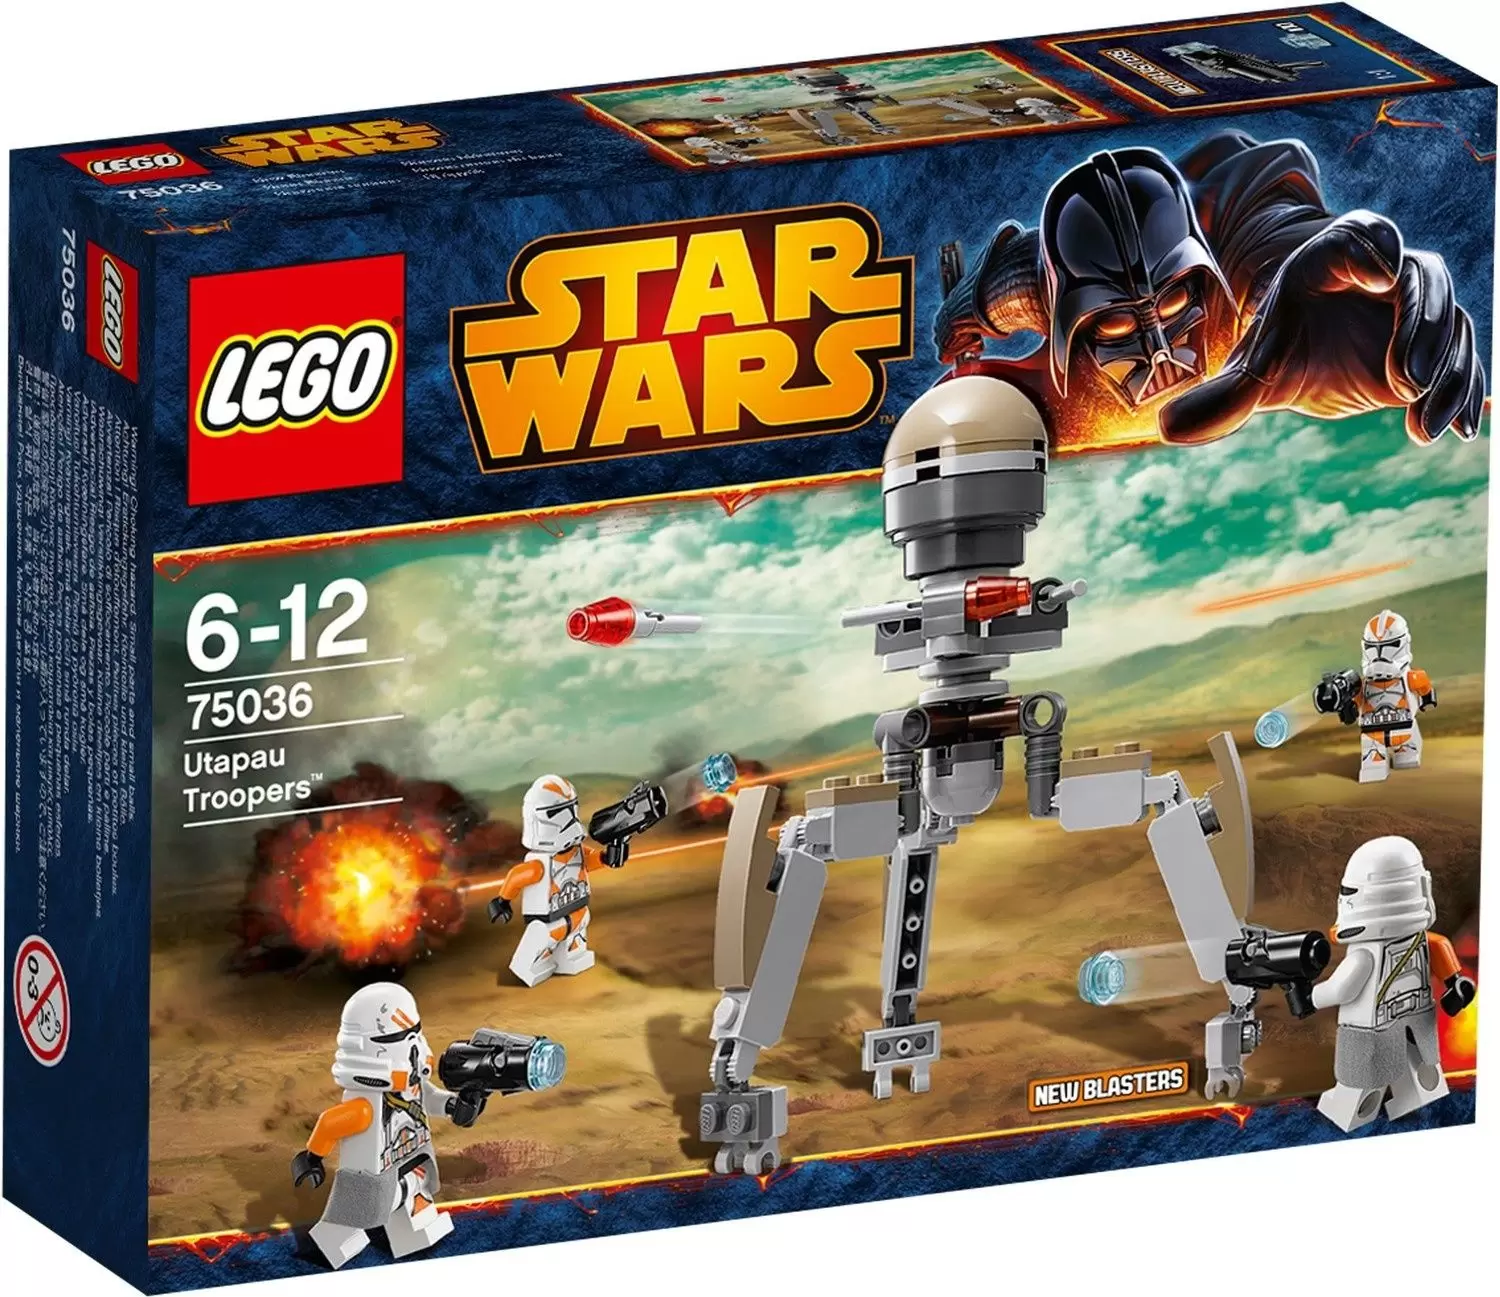 LEGO Star Wars - Utapau Troopers